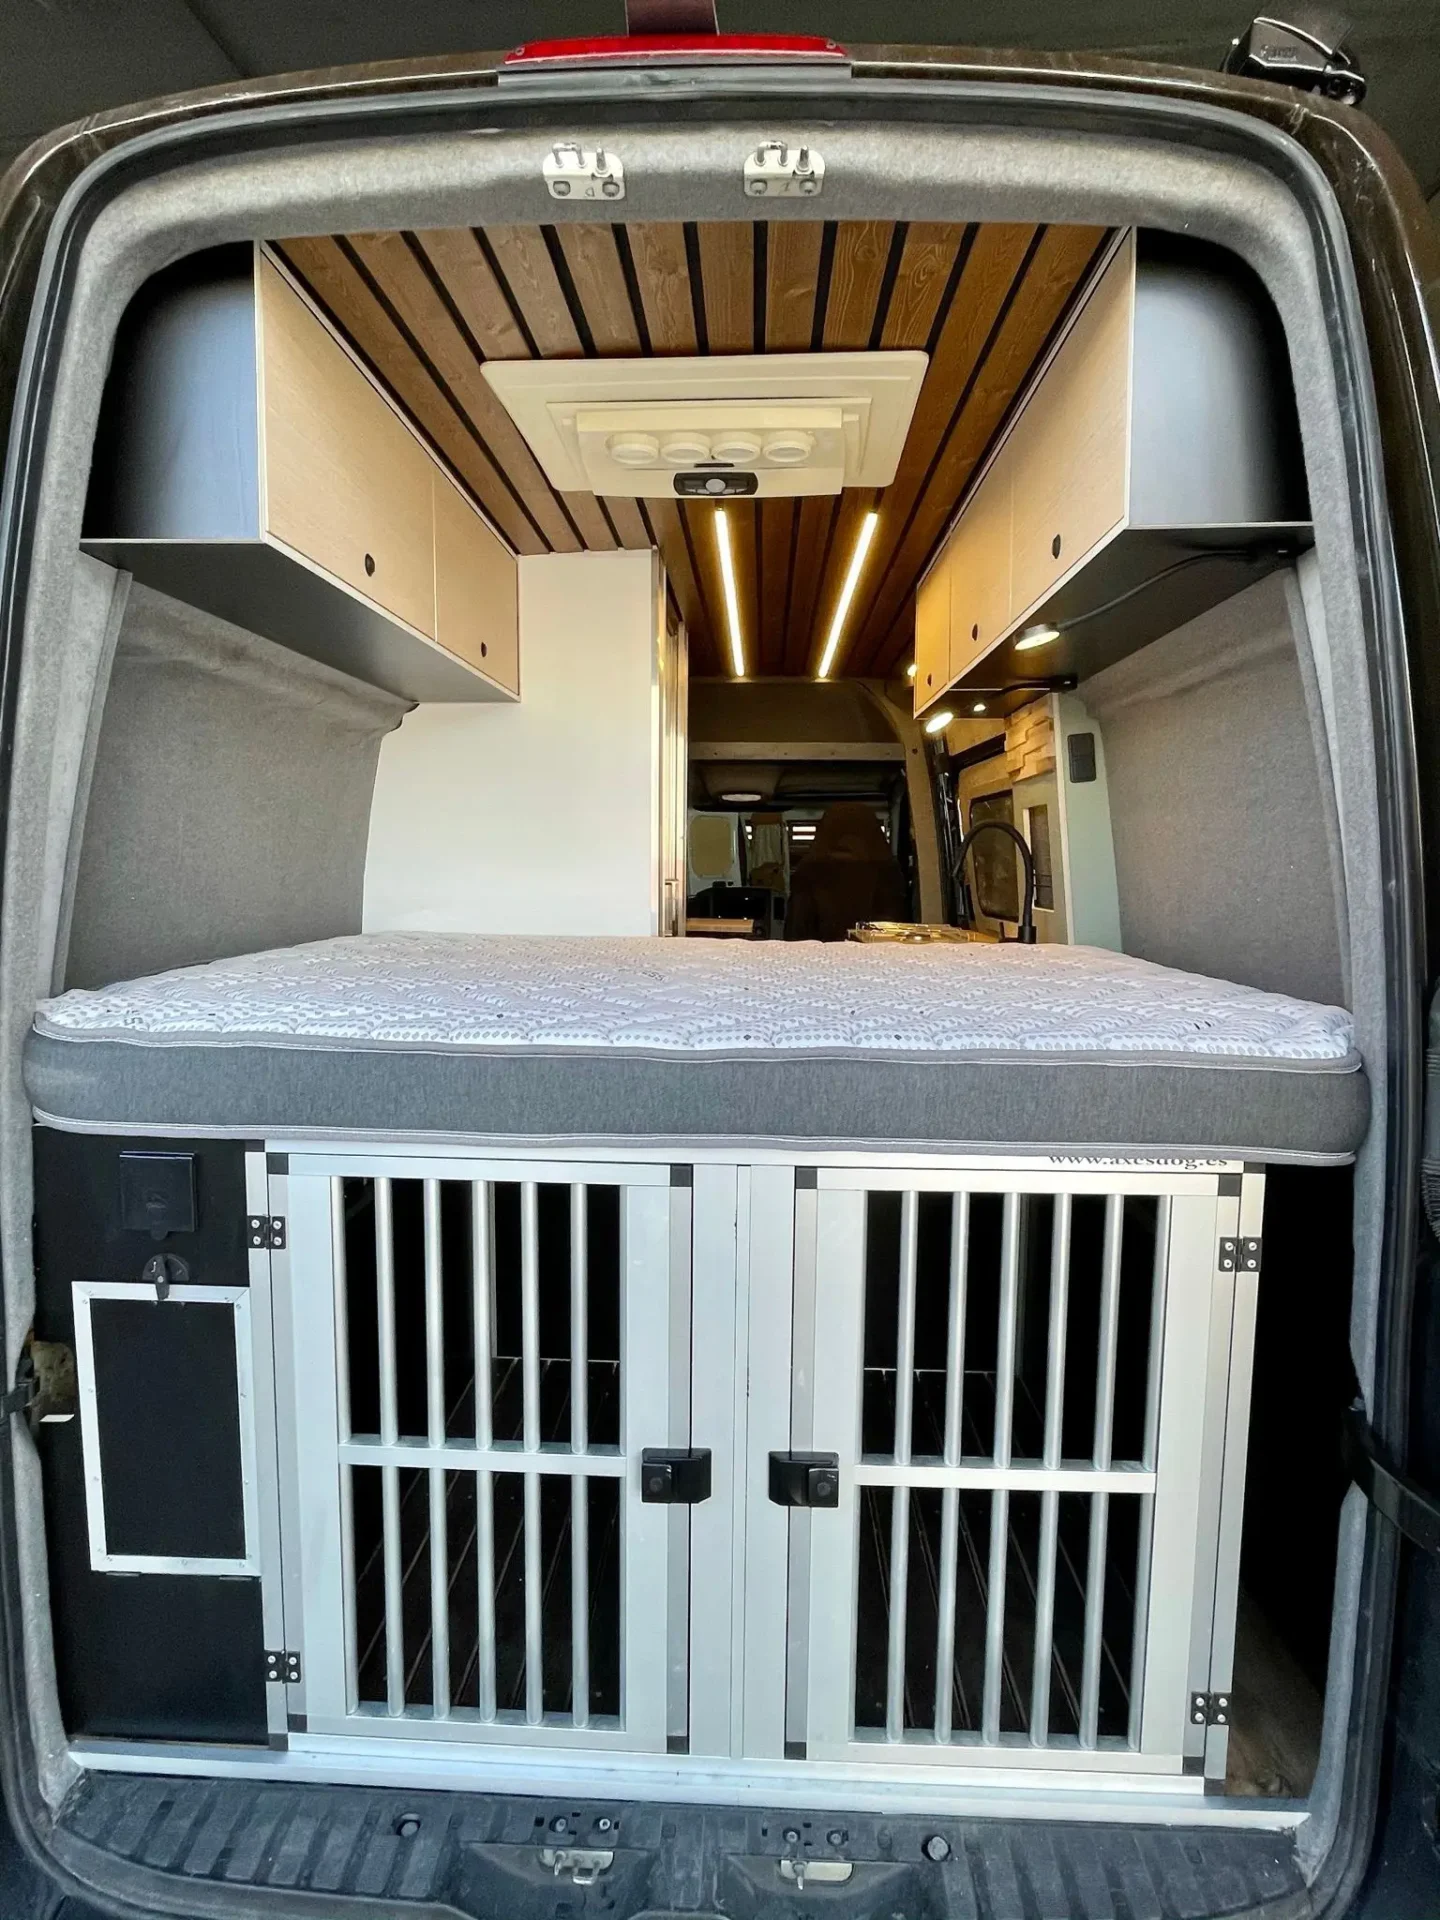 Puerta trasera de la Mercedes Sprinter Camper con jaulas para perros bajo la cama.